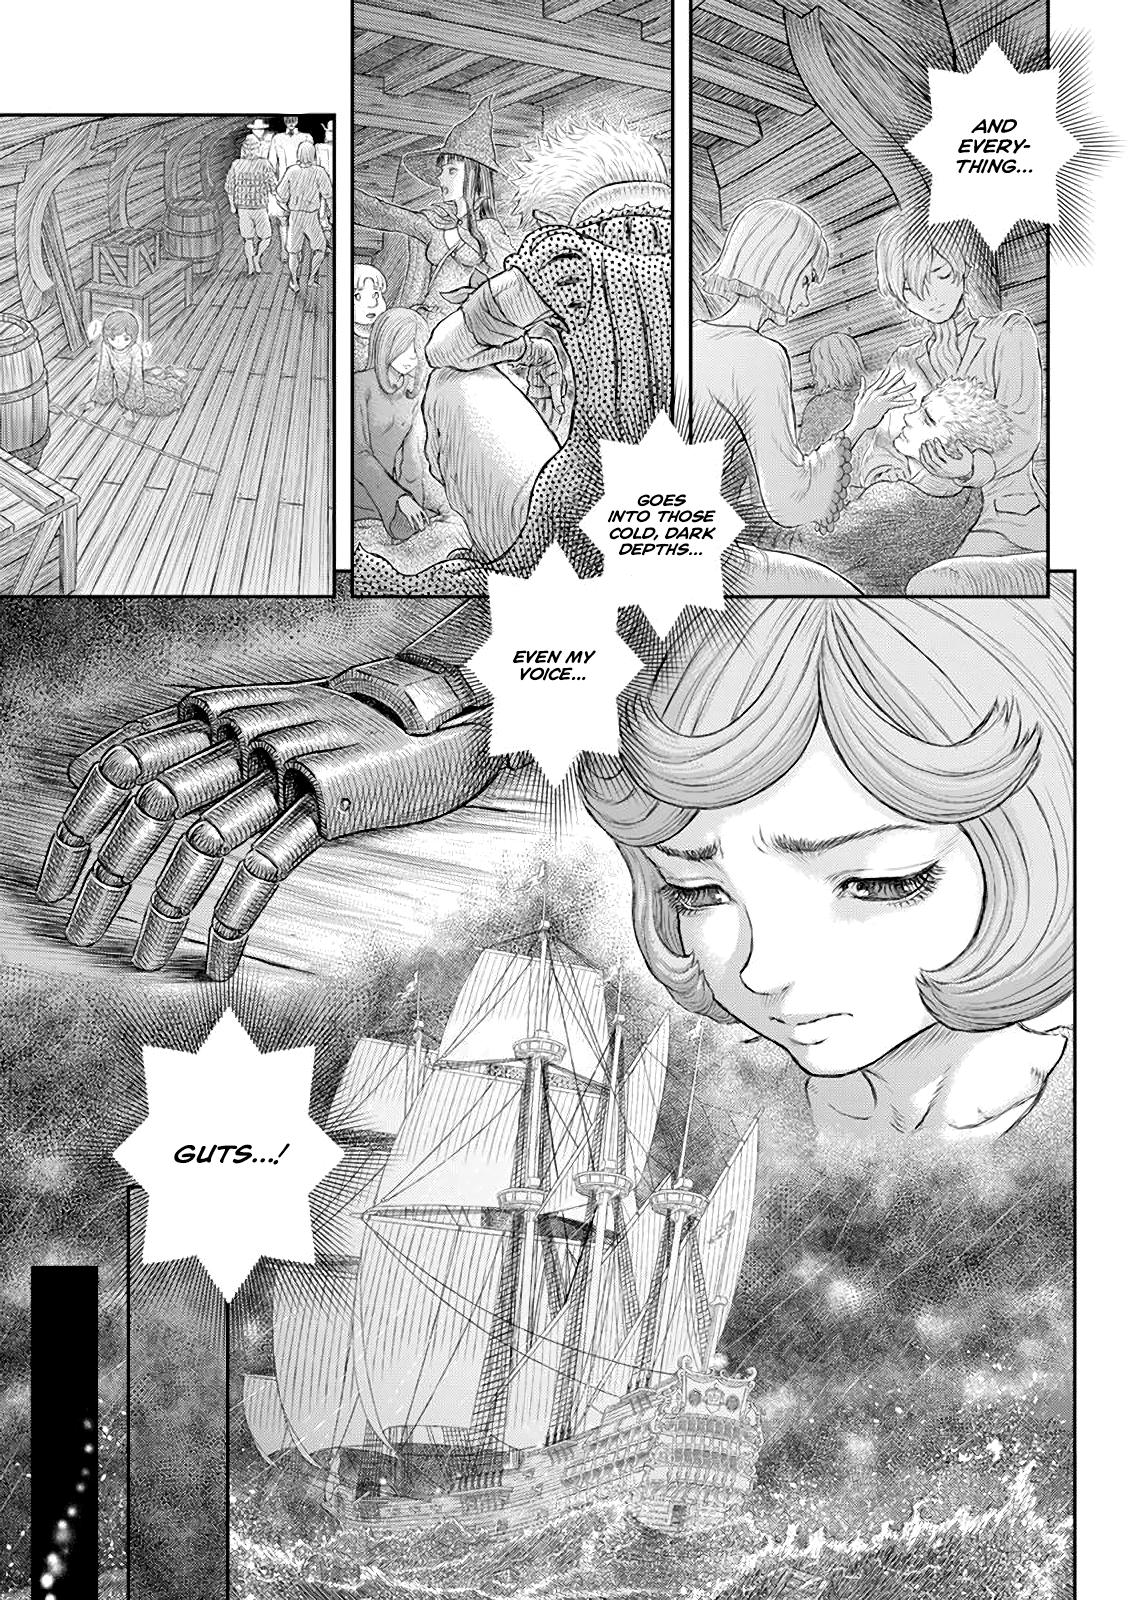 Berserk Manga Chapter 371 image 10